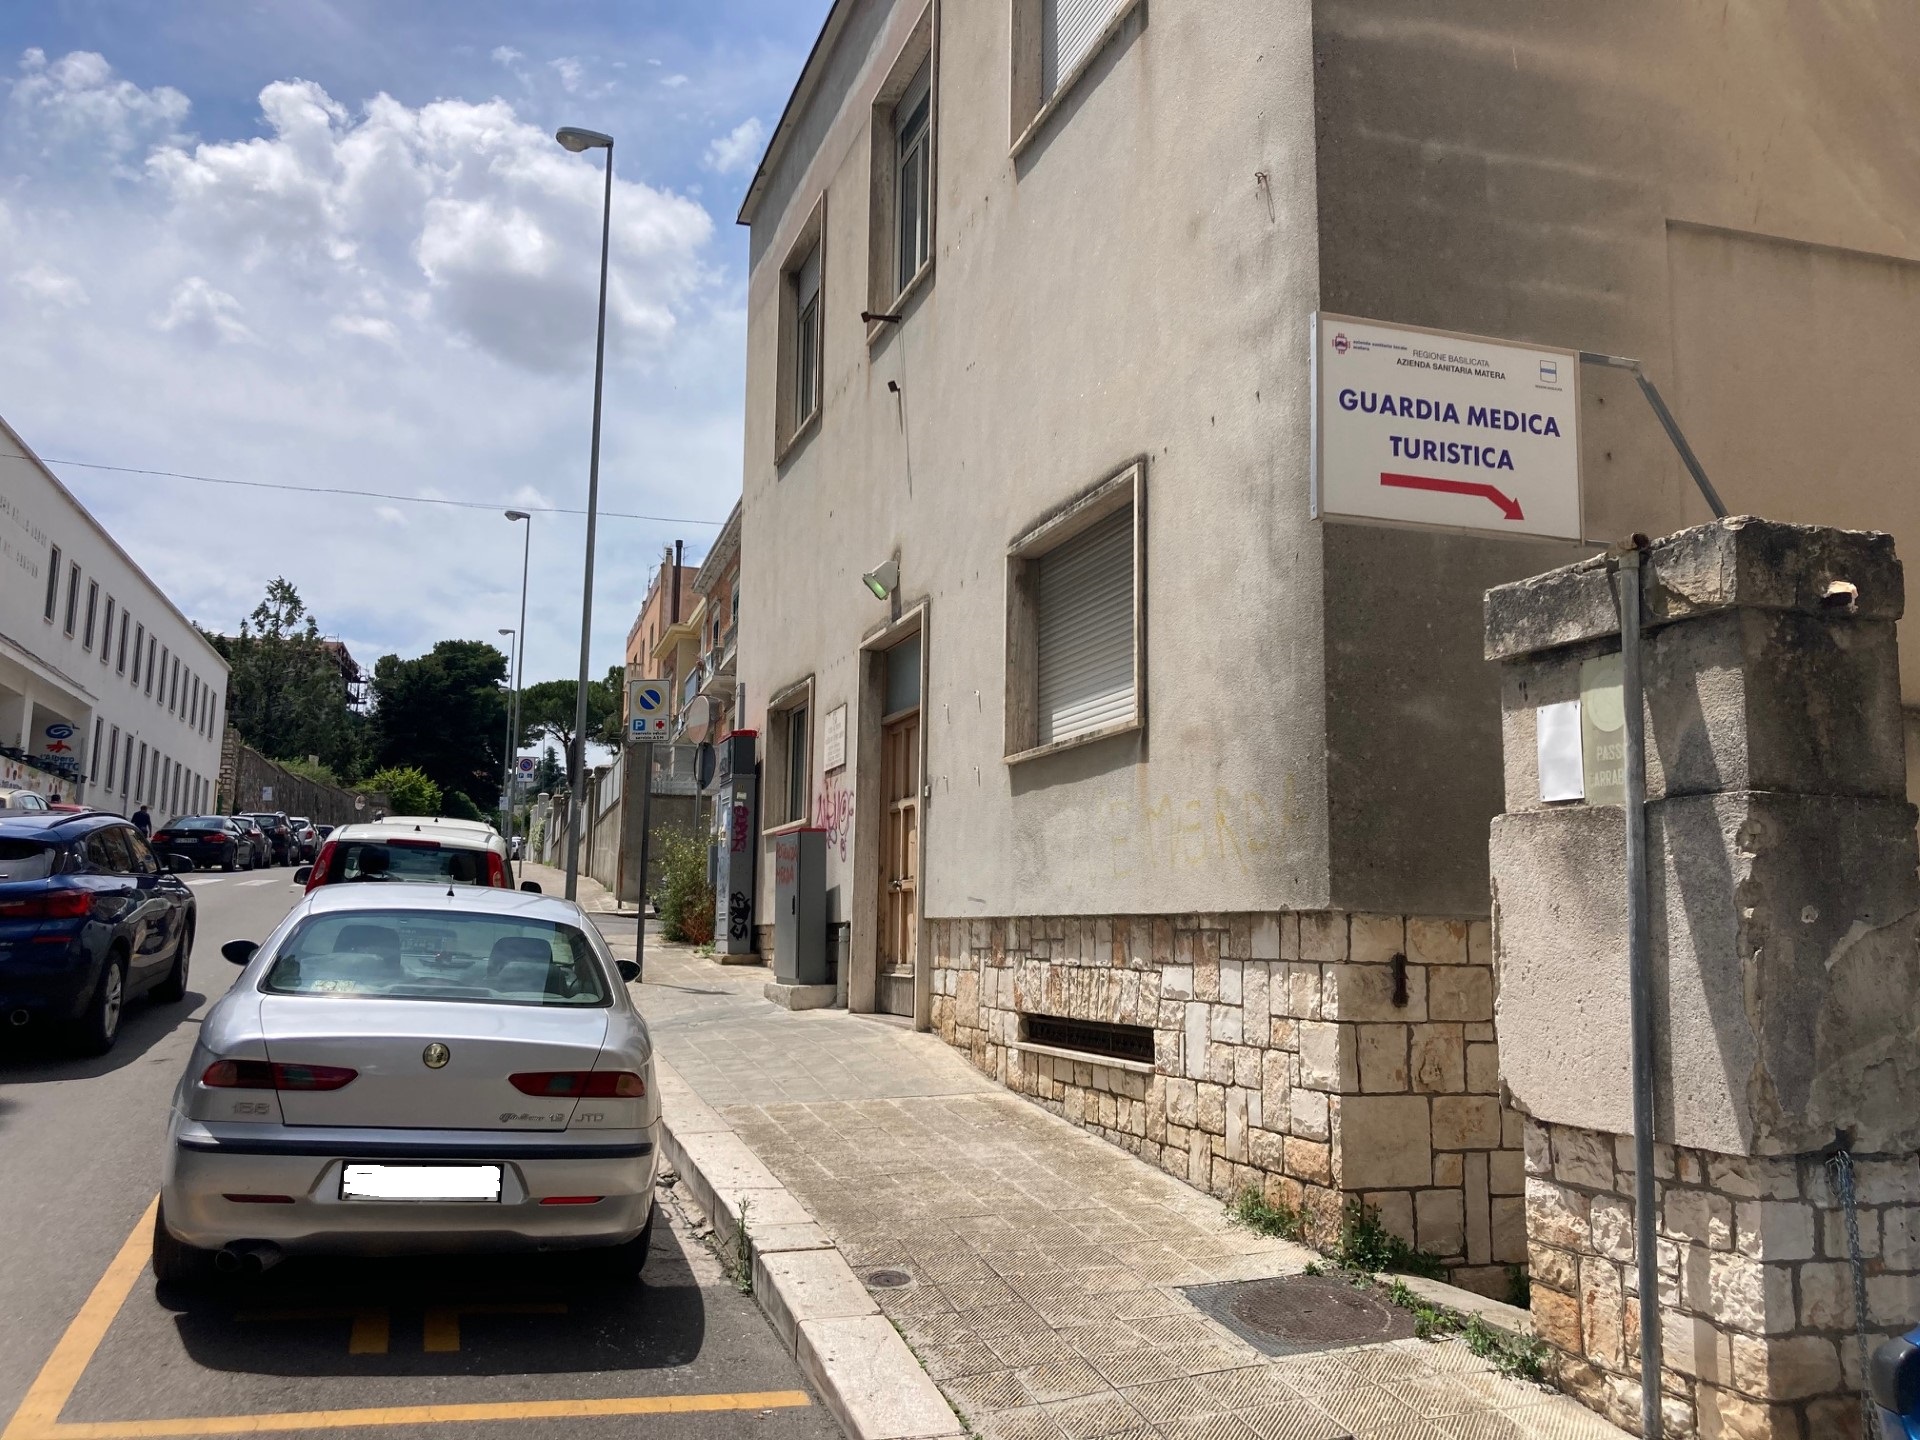 L’Azienda Sanitaria locale di Matera cerca medici per le guardie mediche turistiche nella Città dei Sassi e sulla fascia jonica